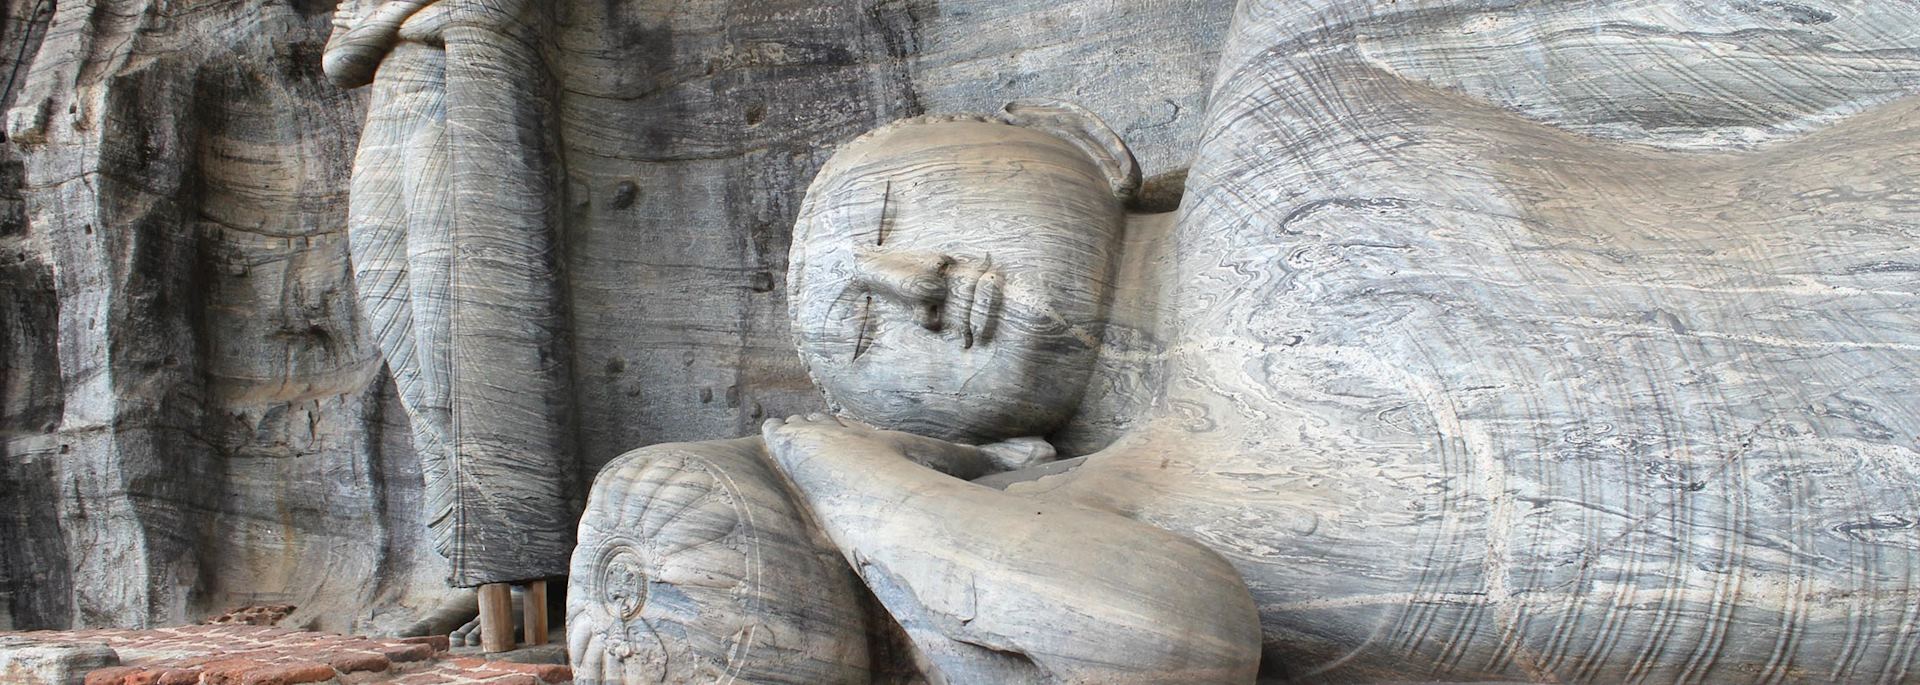 Polonnaruwa buddhas